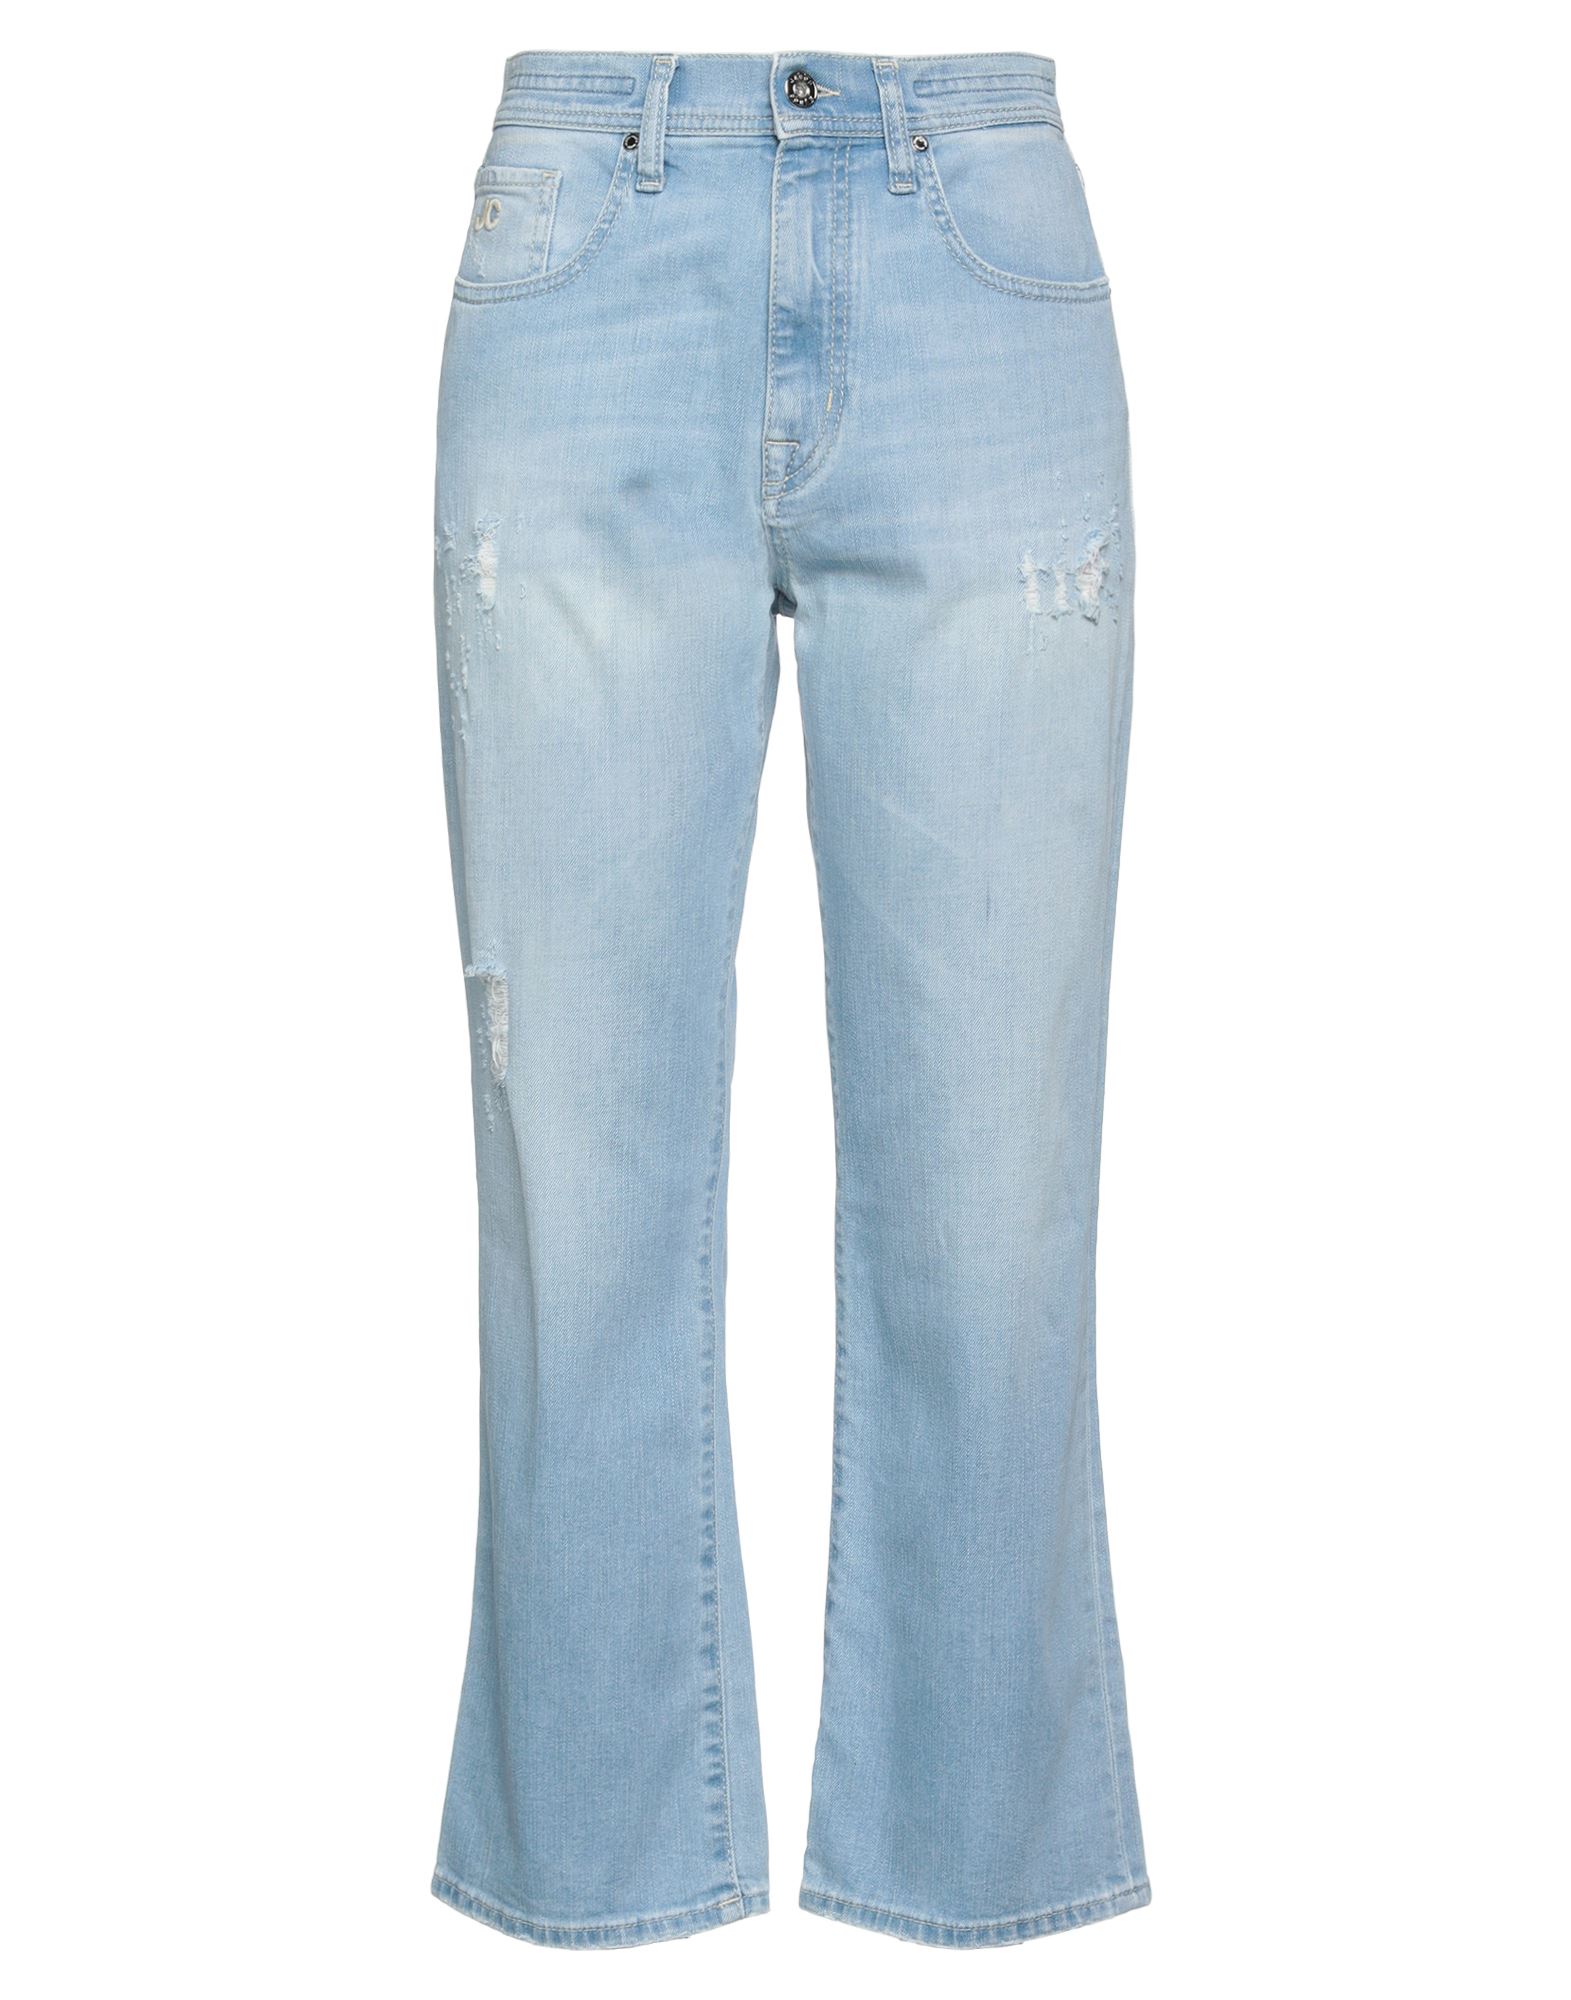 Jacob Cohёn Woman Jeans Blue Size 29 Cotton, Elastane